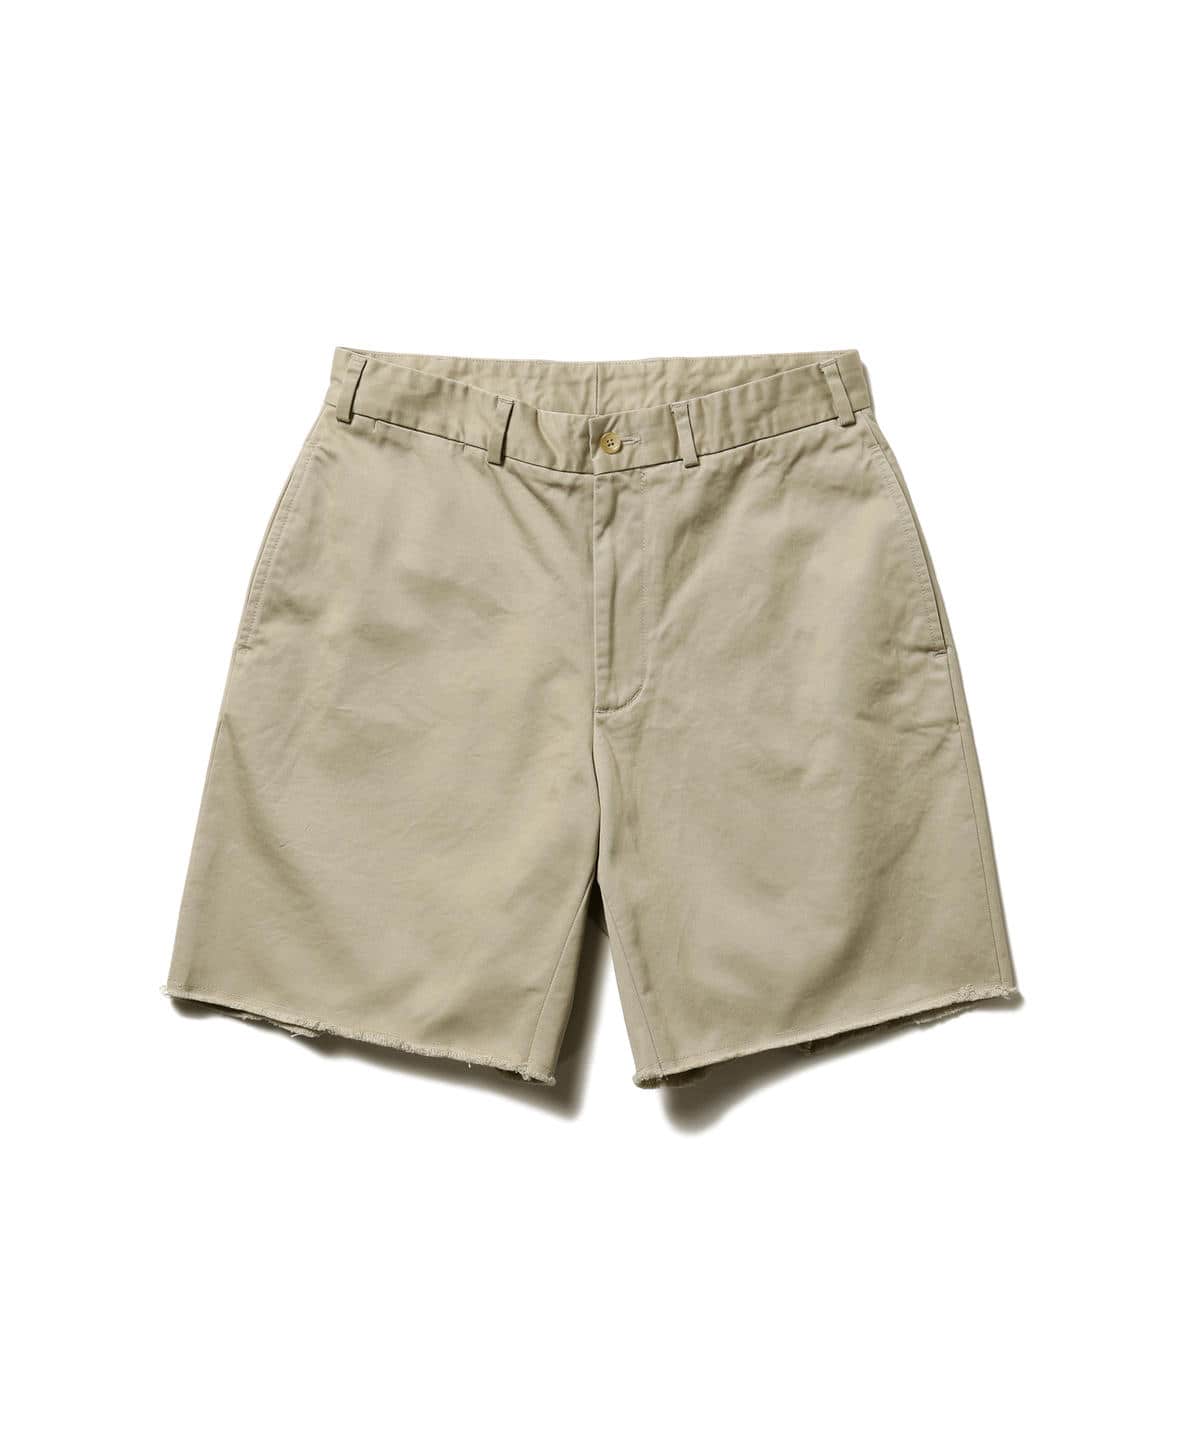 [Outlet] BEAMS PLUS / Cutoff Chino Shorts - Pants